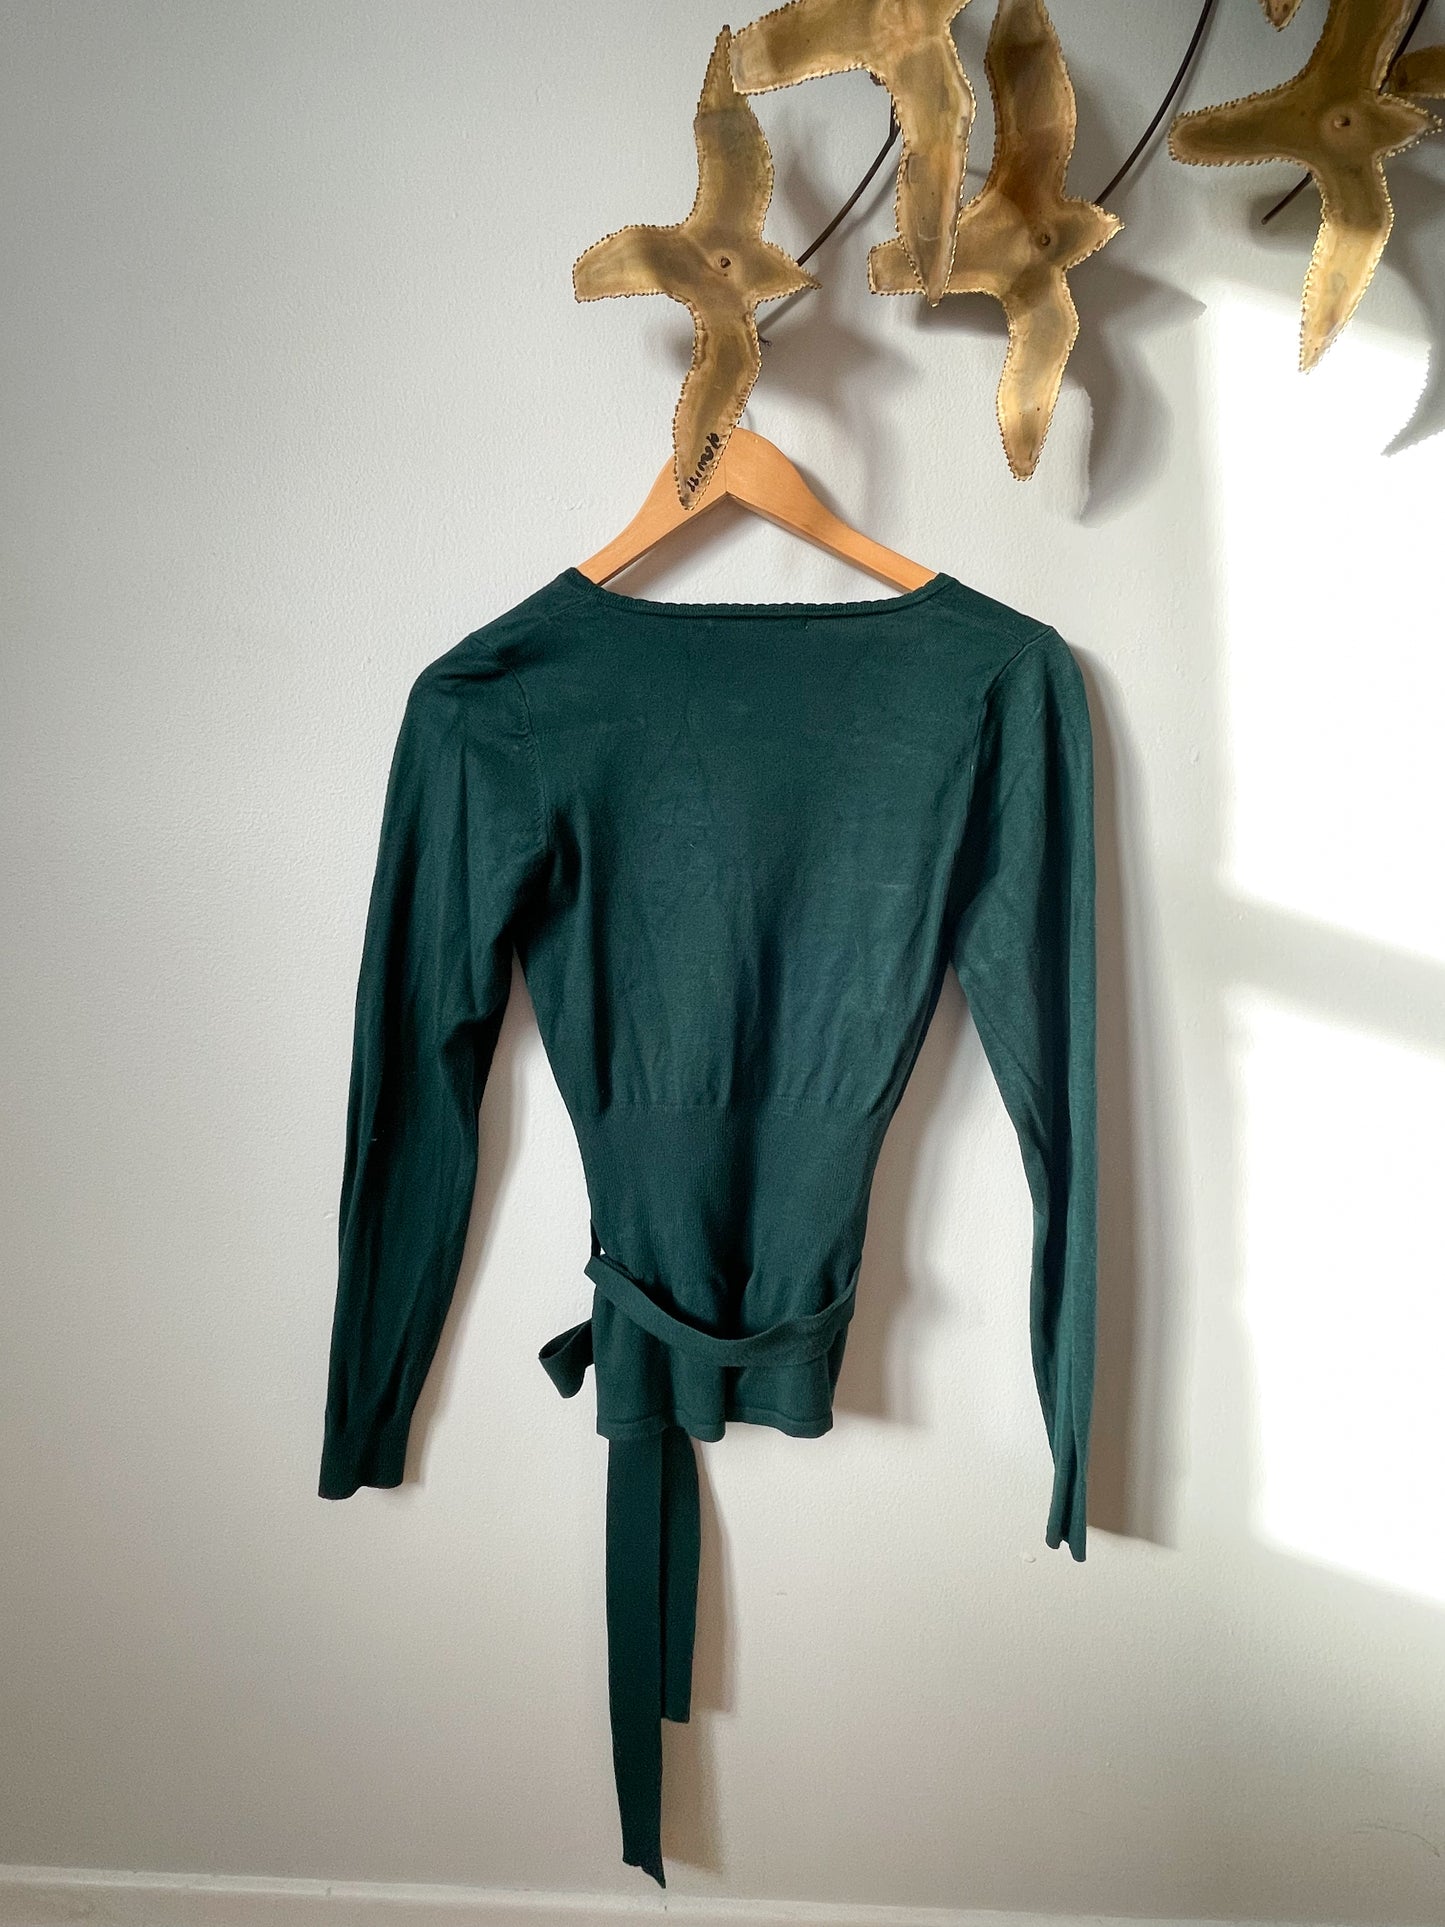 In Wear Hunter Green Wrap Style Sweater - XS